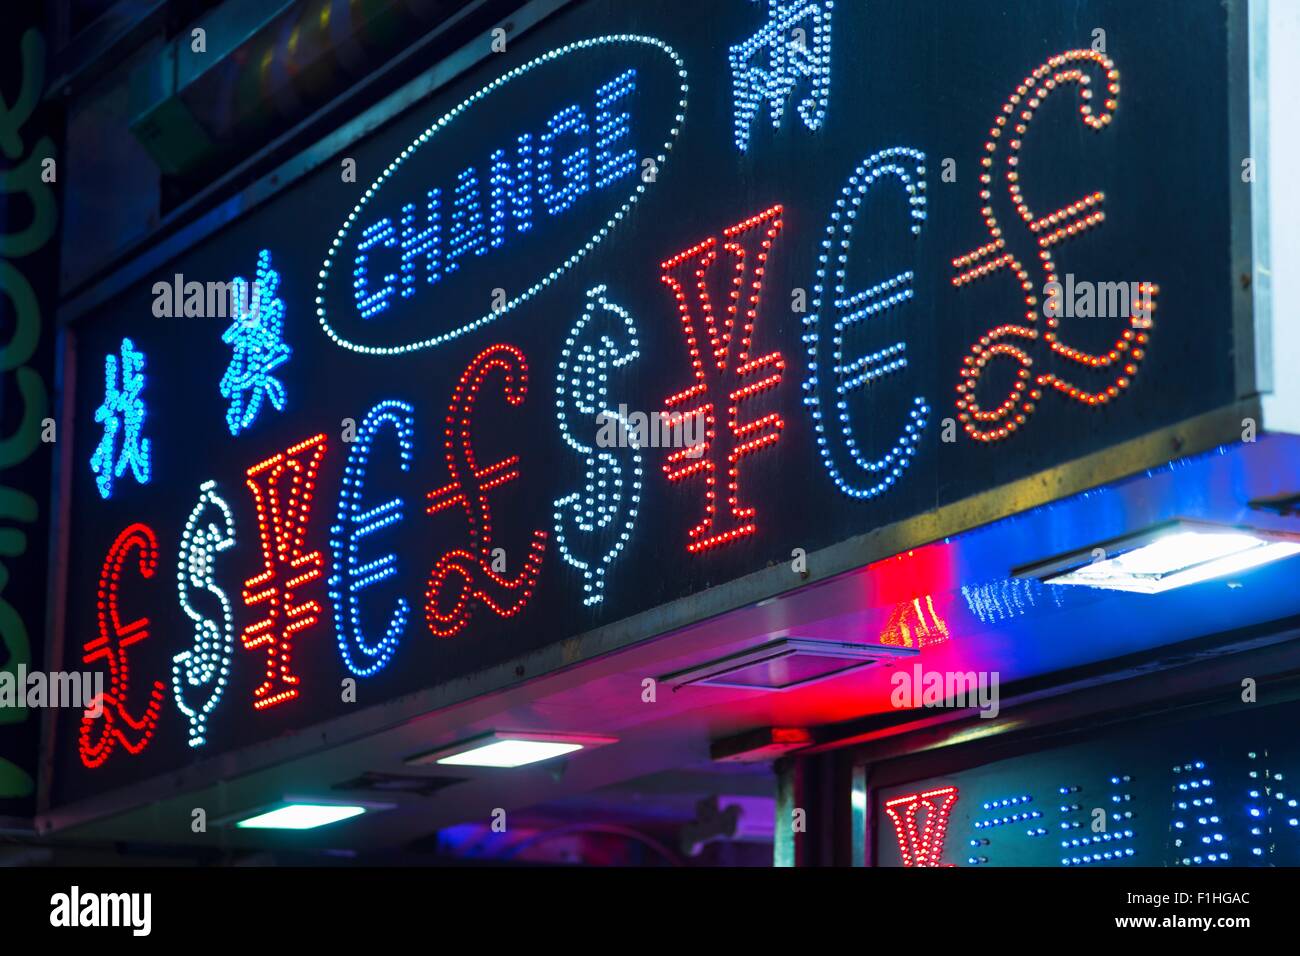 Beleuchtete Wechselstube Zeichen, Hong Kong, China Stockfoto